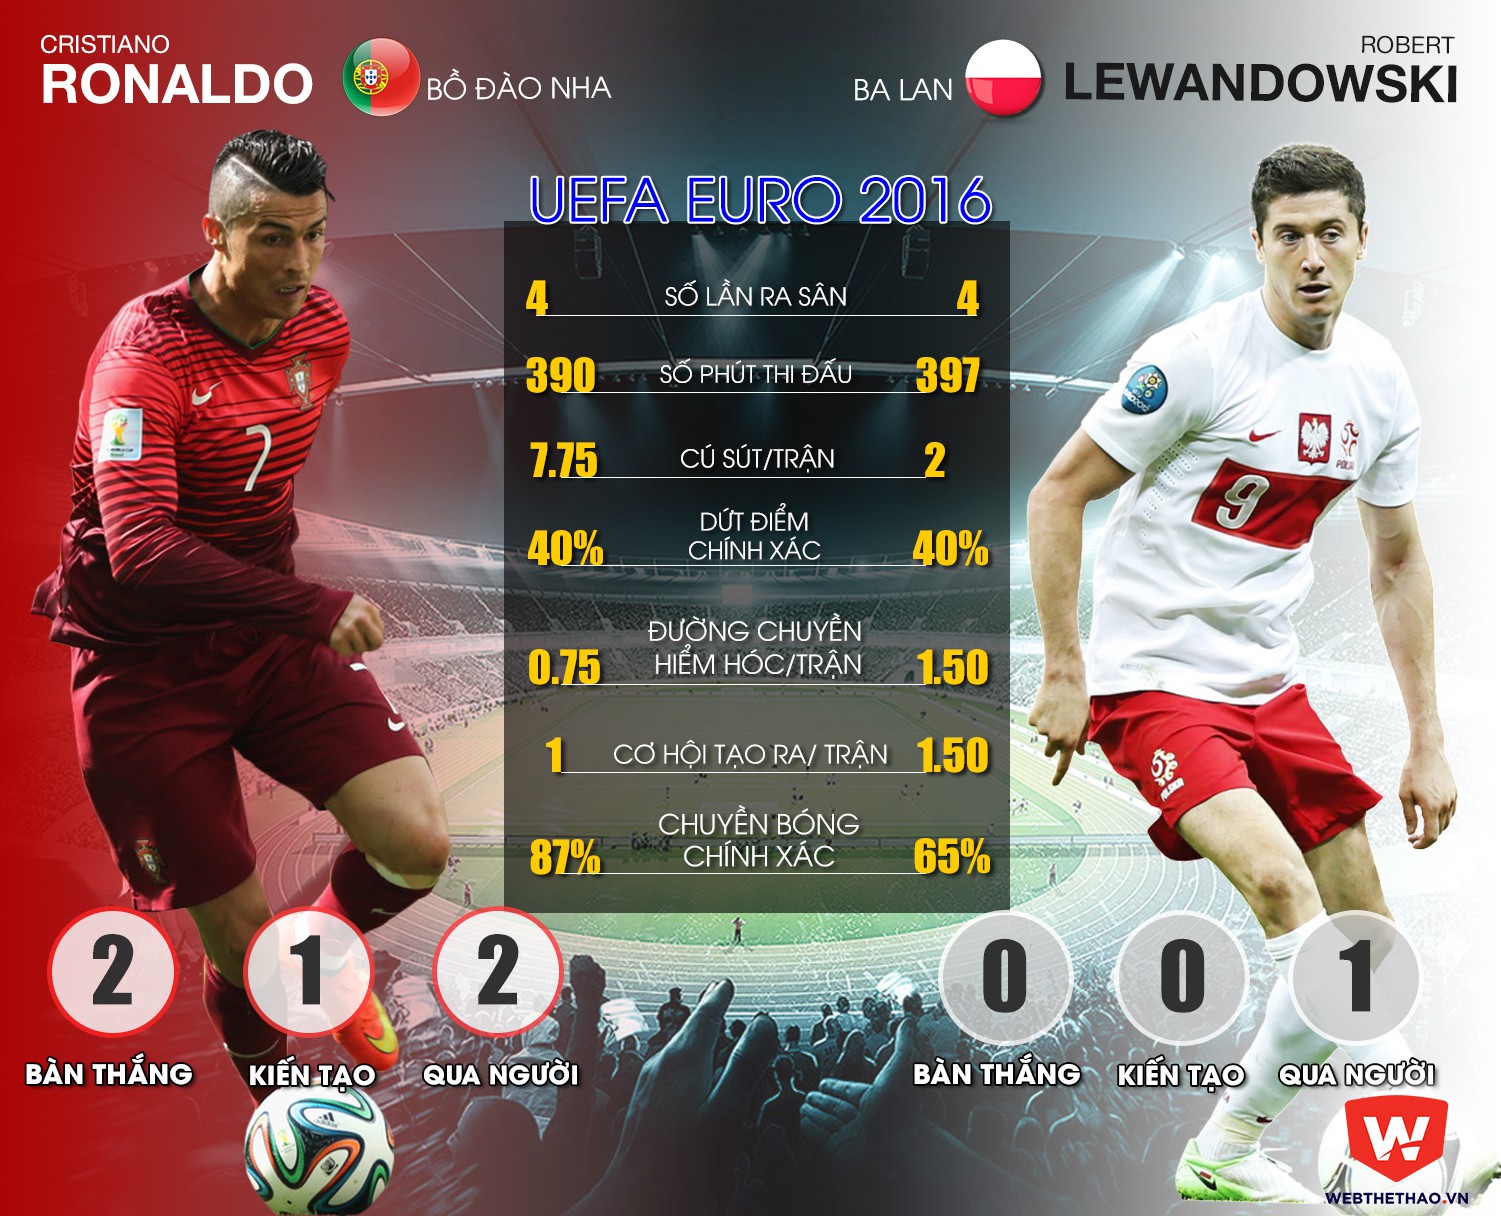 Màn thể hiện của Cristiano Ronaldo và Robert Lwandowski tại EURO 2016 tính đến trước trận Tứ kết.